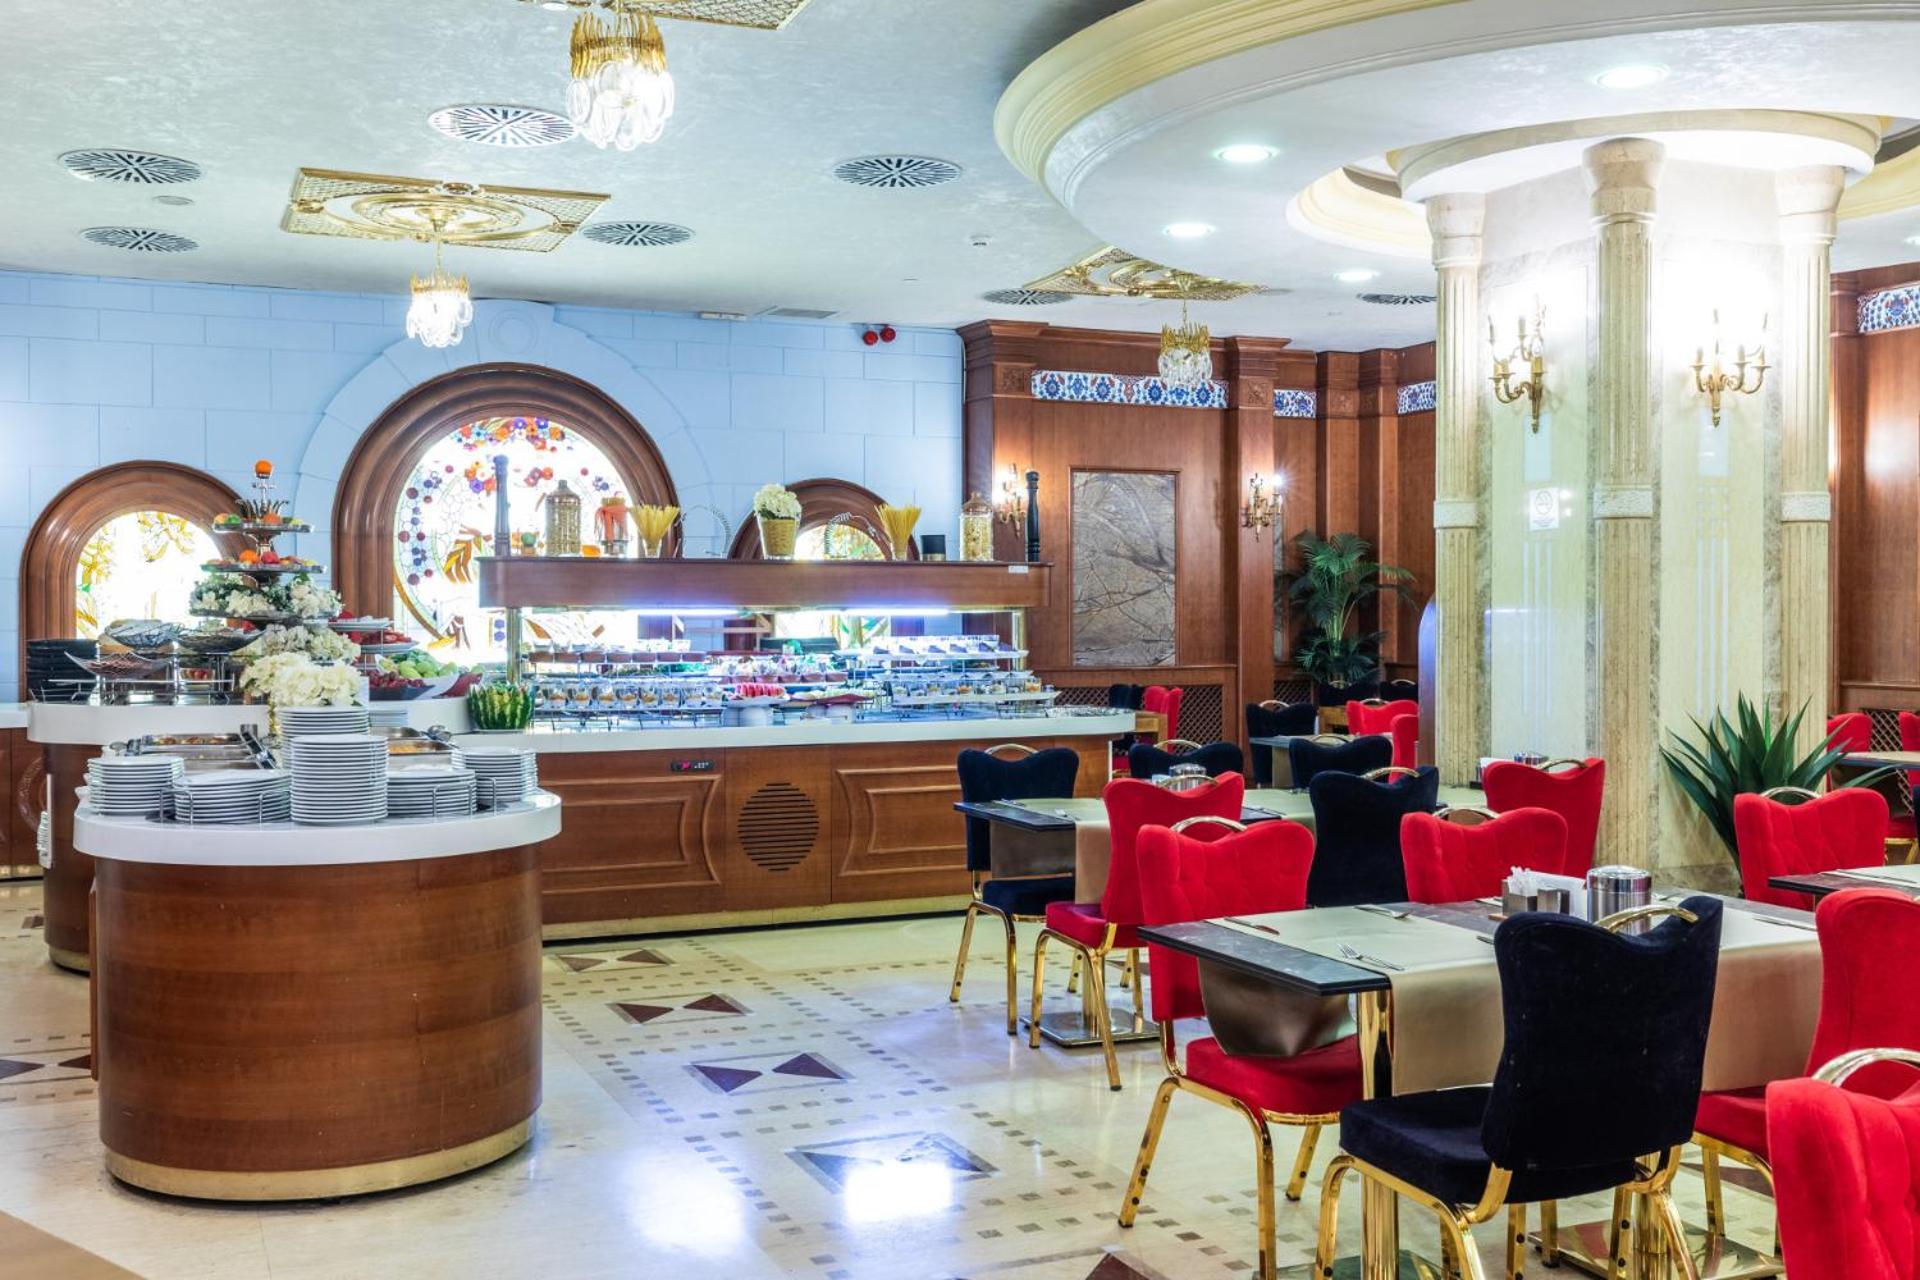 اسطنبول فندق سيلال آجا كوناجي المظهر الخارجي الصورة